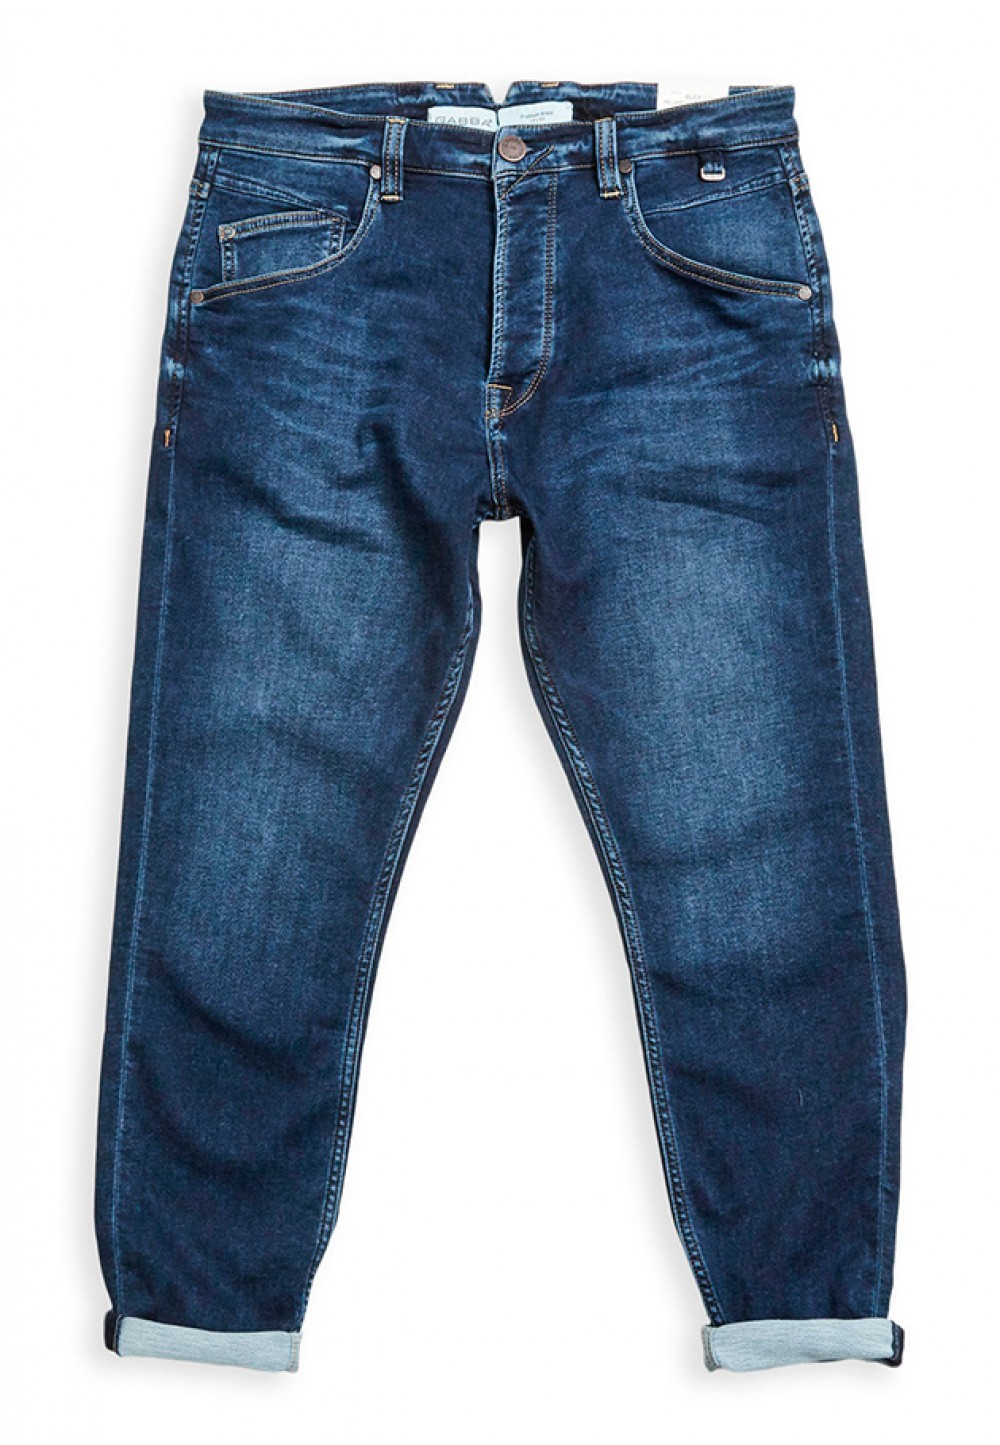 Зауженные джинсы синего цвета